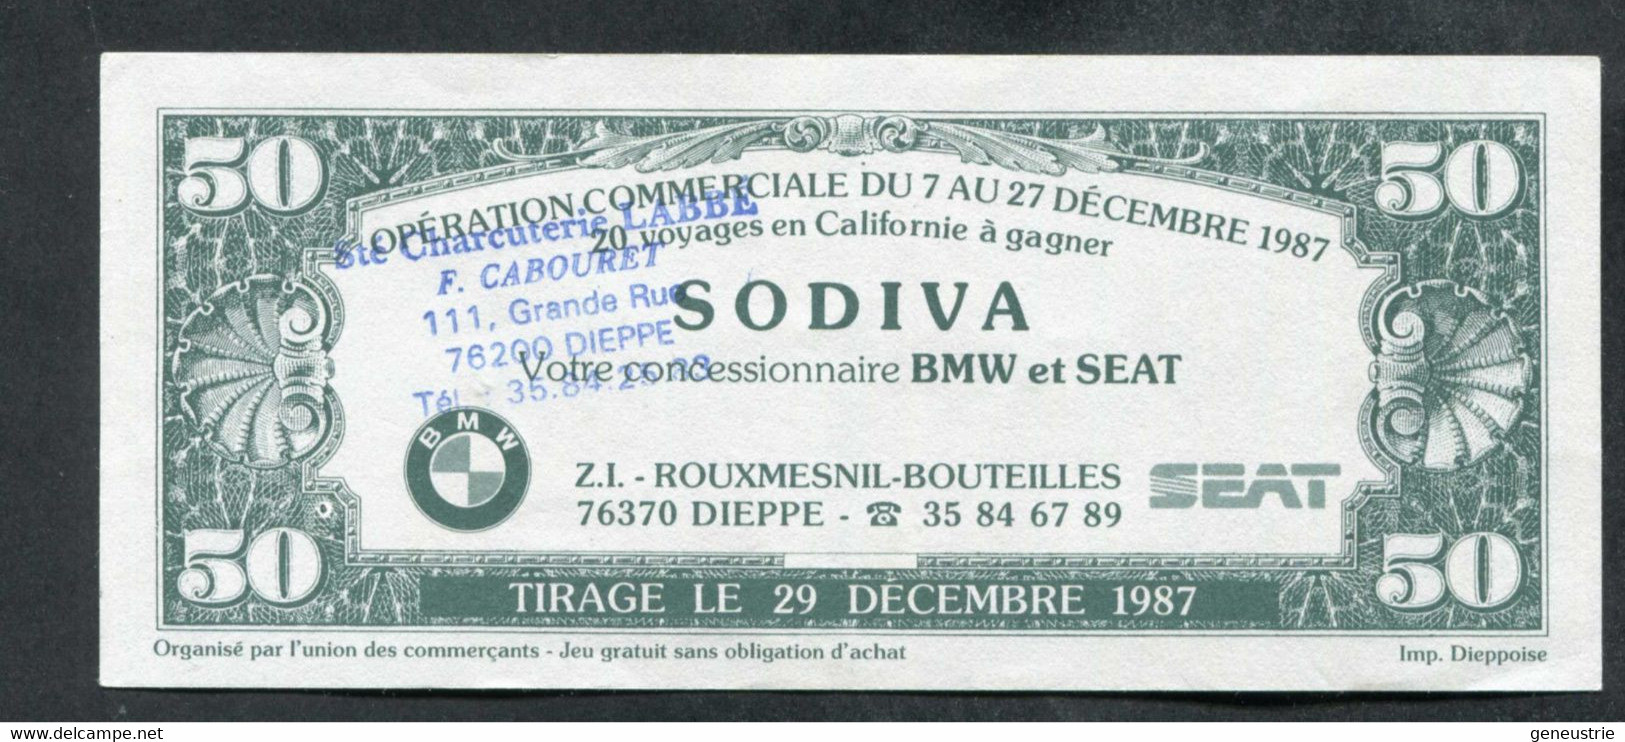 Billet Publicitaire 50 Dollars "Charcuterie Labbé - Dieppe C'est L'Amérique" Sovida Concessionnaire BMW Et SEAT à Dieppe - Fiktive & Specimen